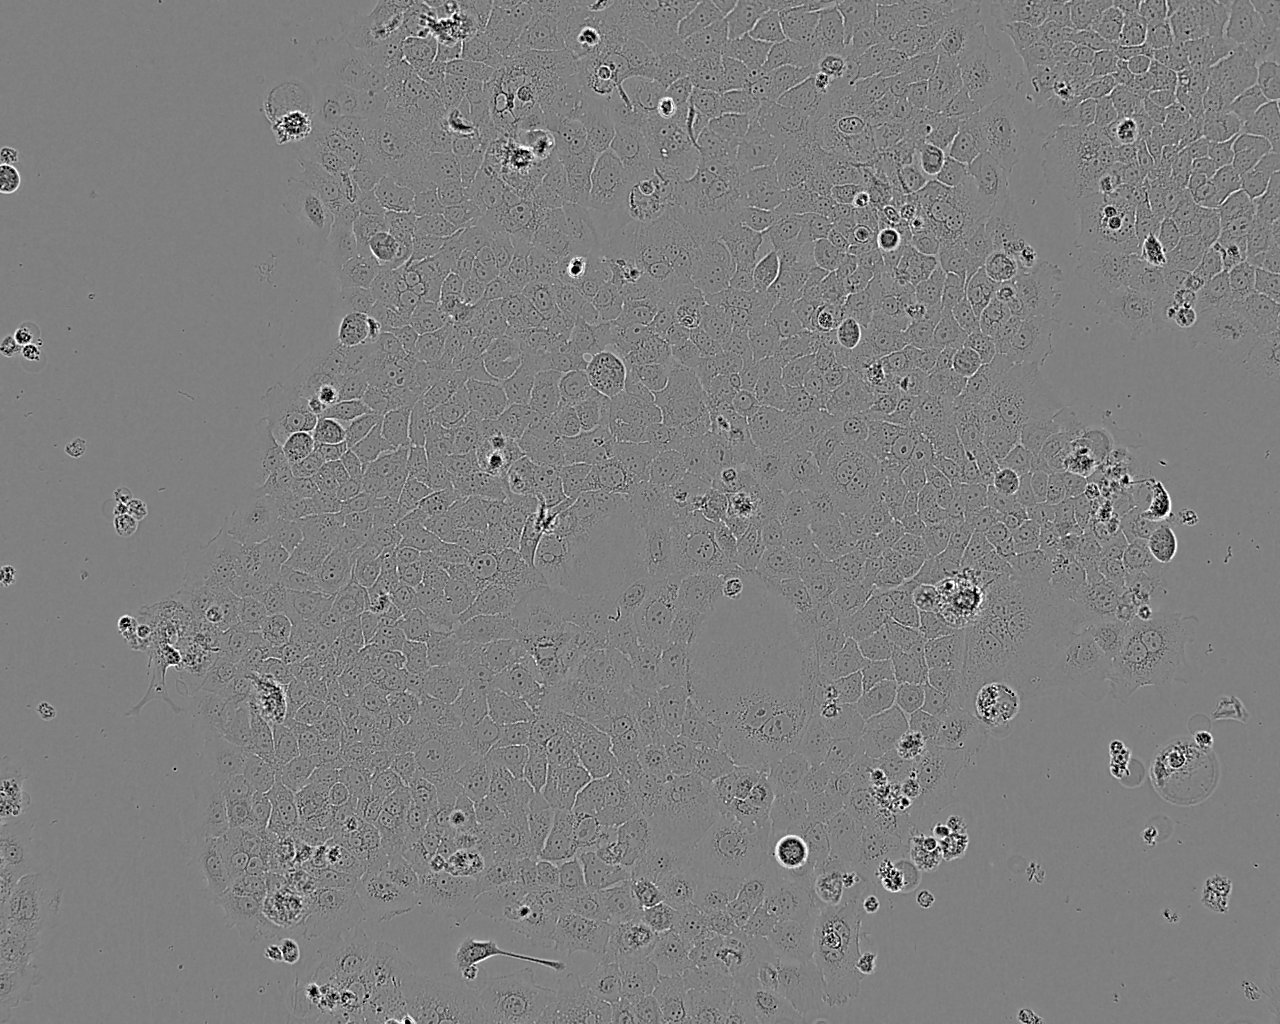 OVMANA epithelioid cells人卵巢癌细胞系,OVMANA epithelioid cells